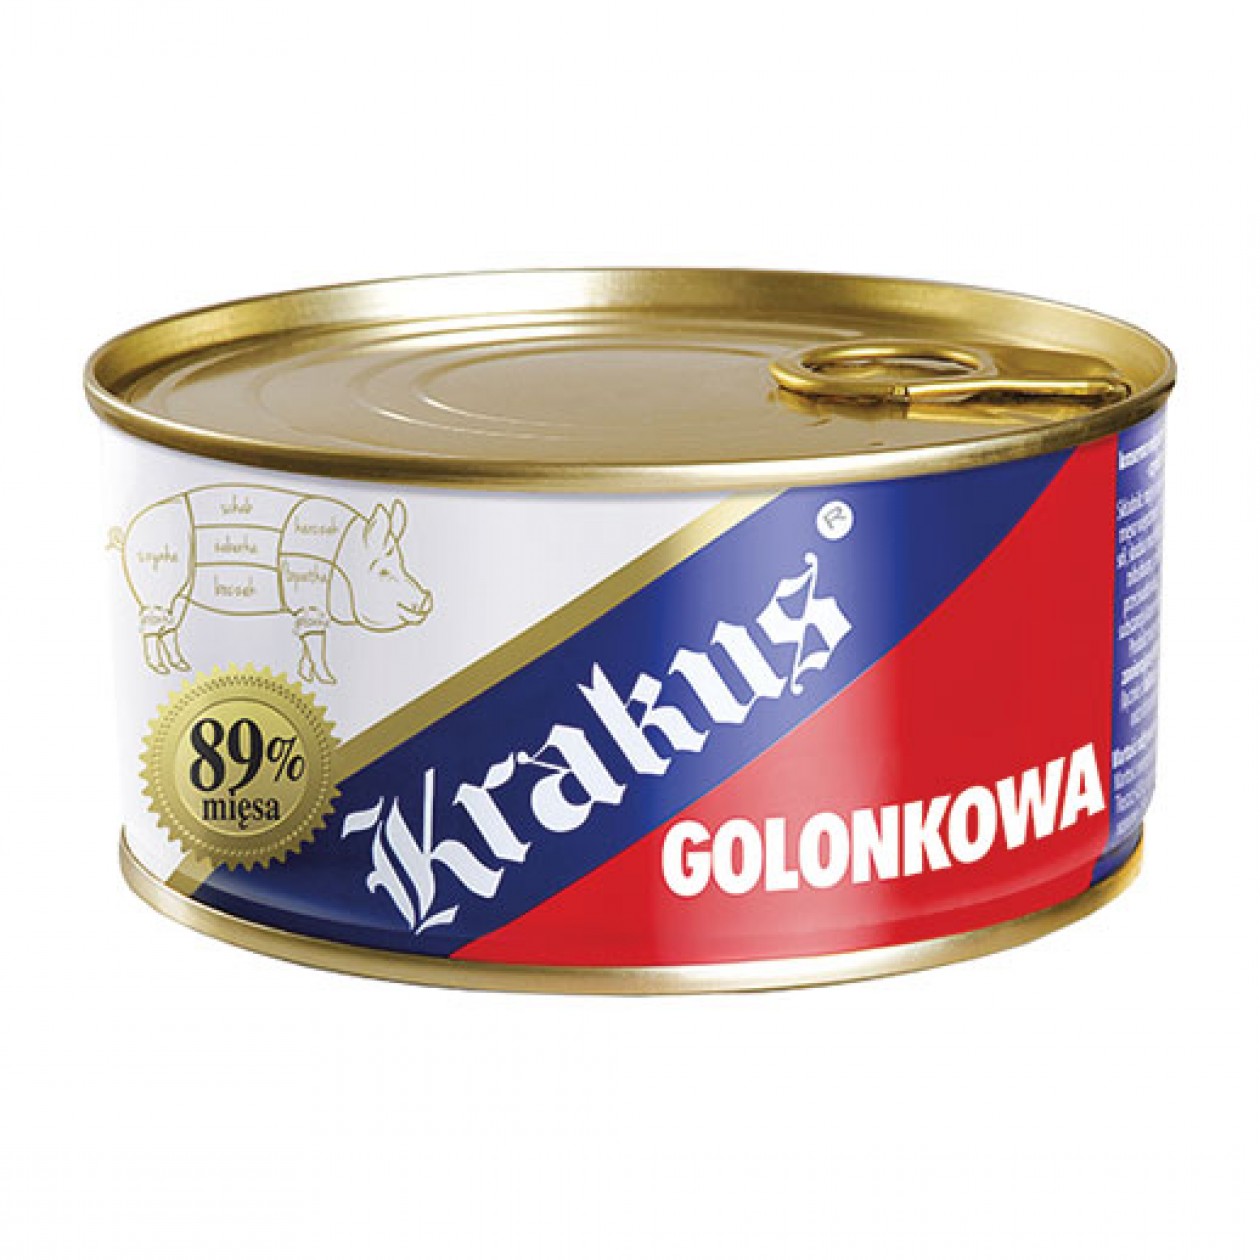 Krakus Canned Meat Golonka (2) 6x300g